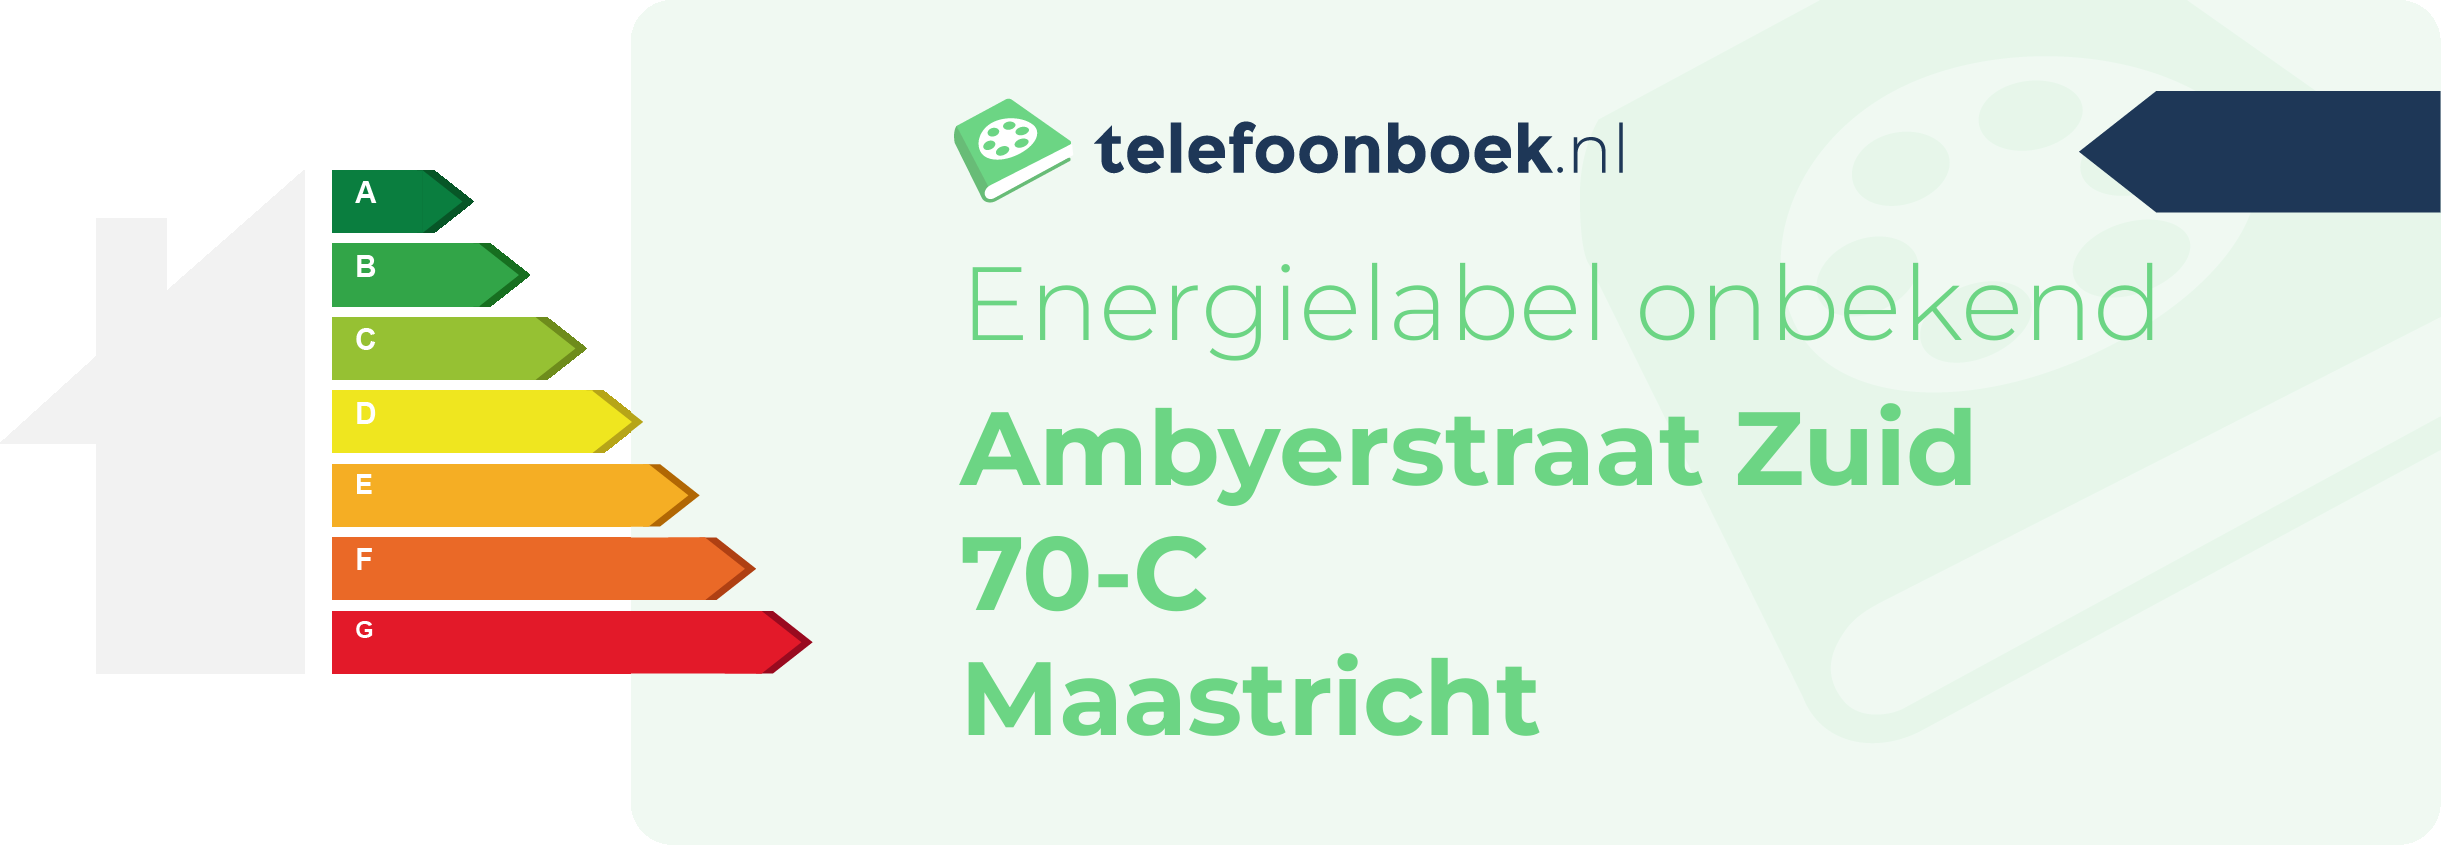 Energielabel Ambyerstraat Zuid 70-C Maastricht